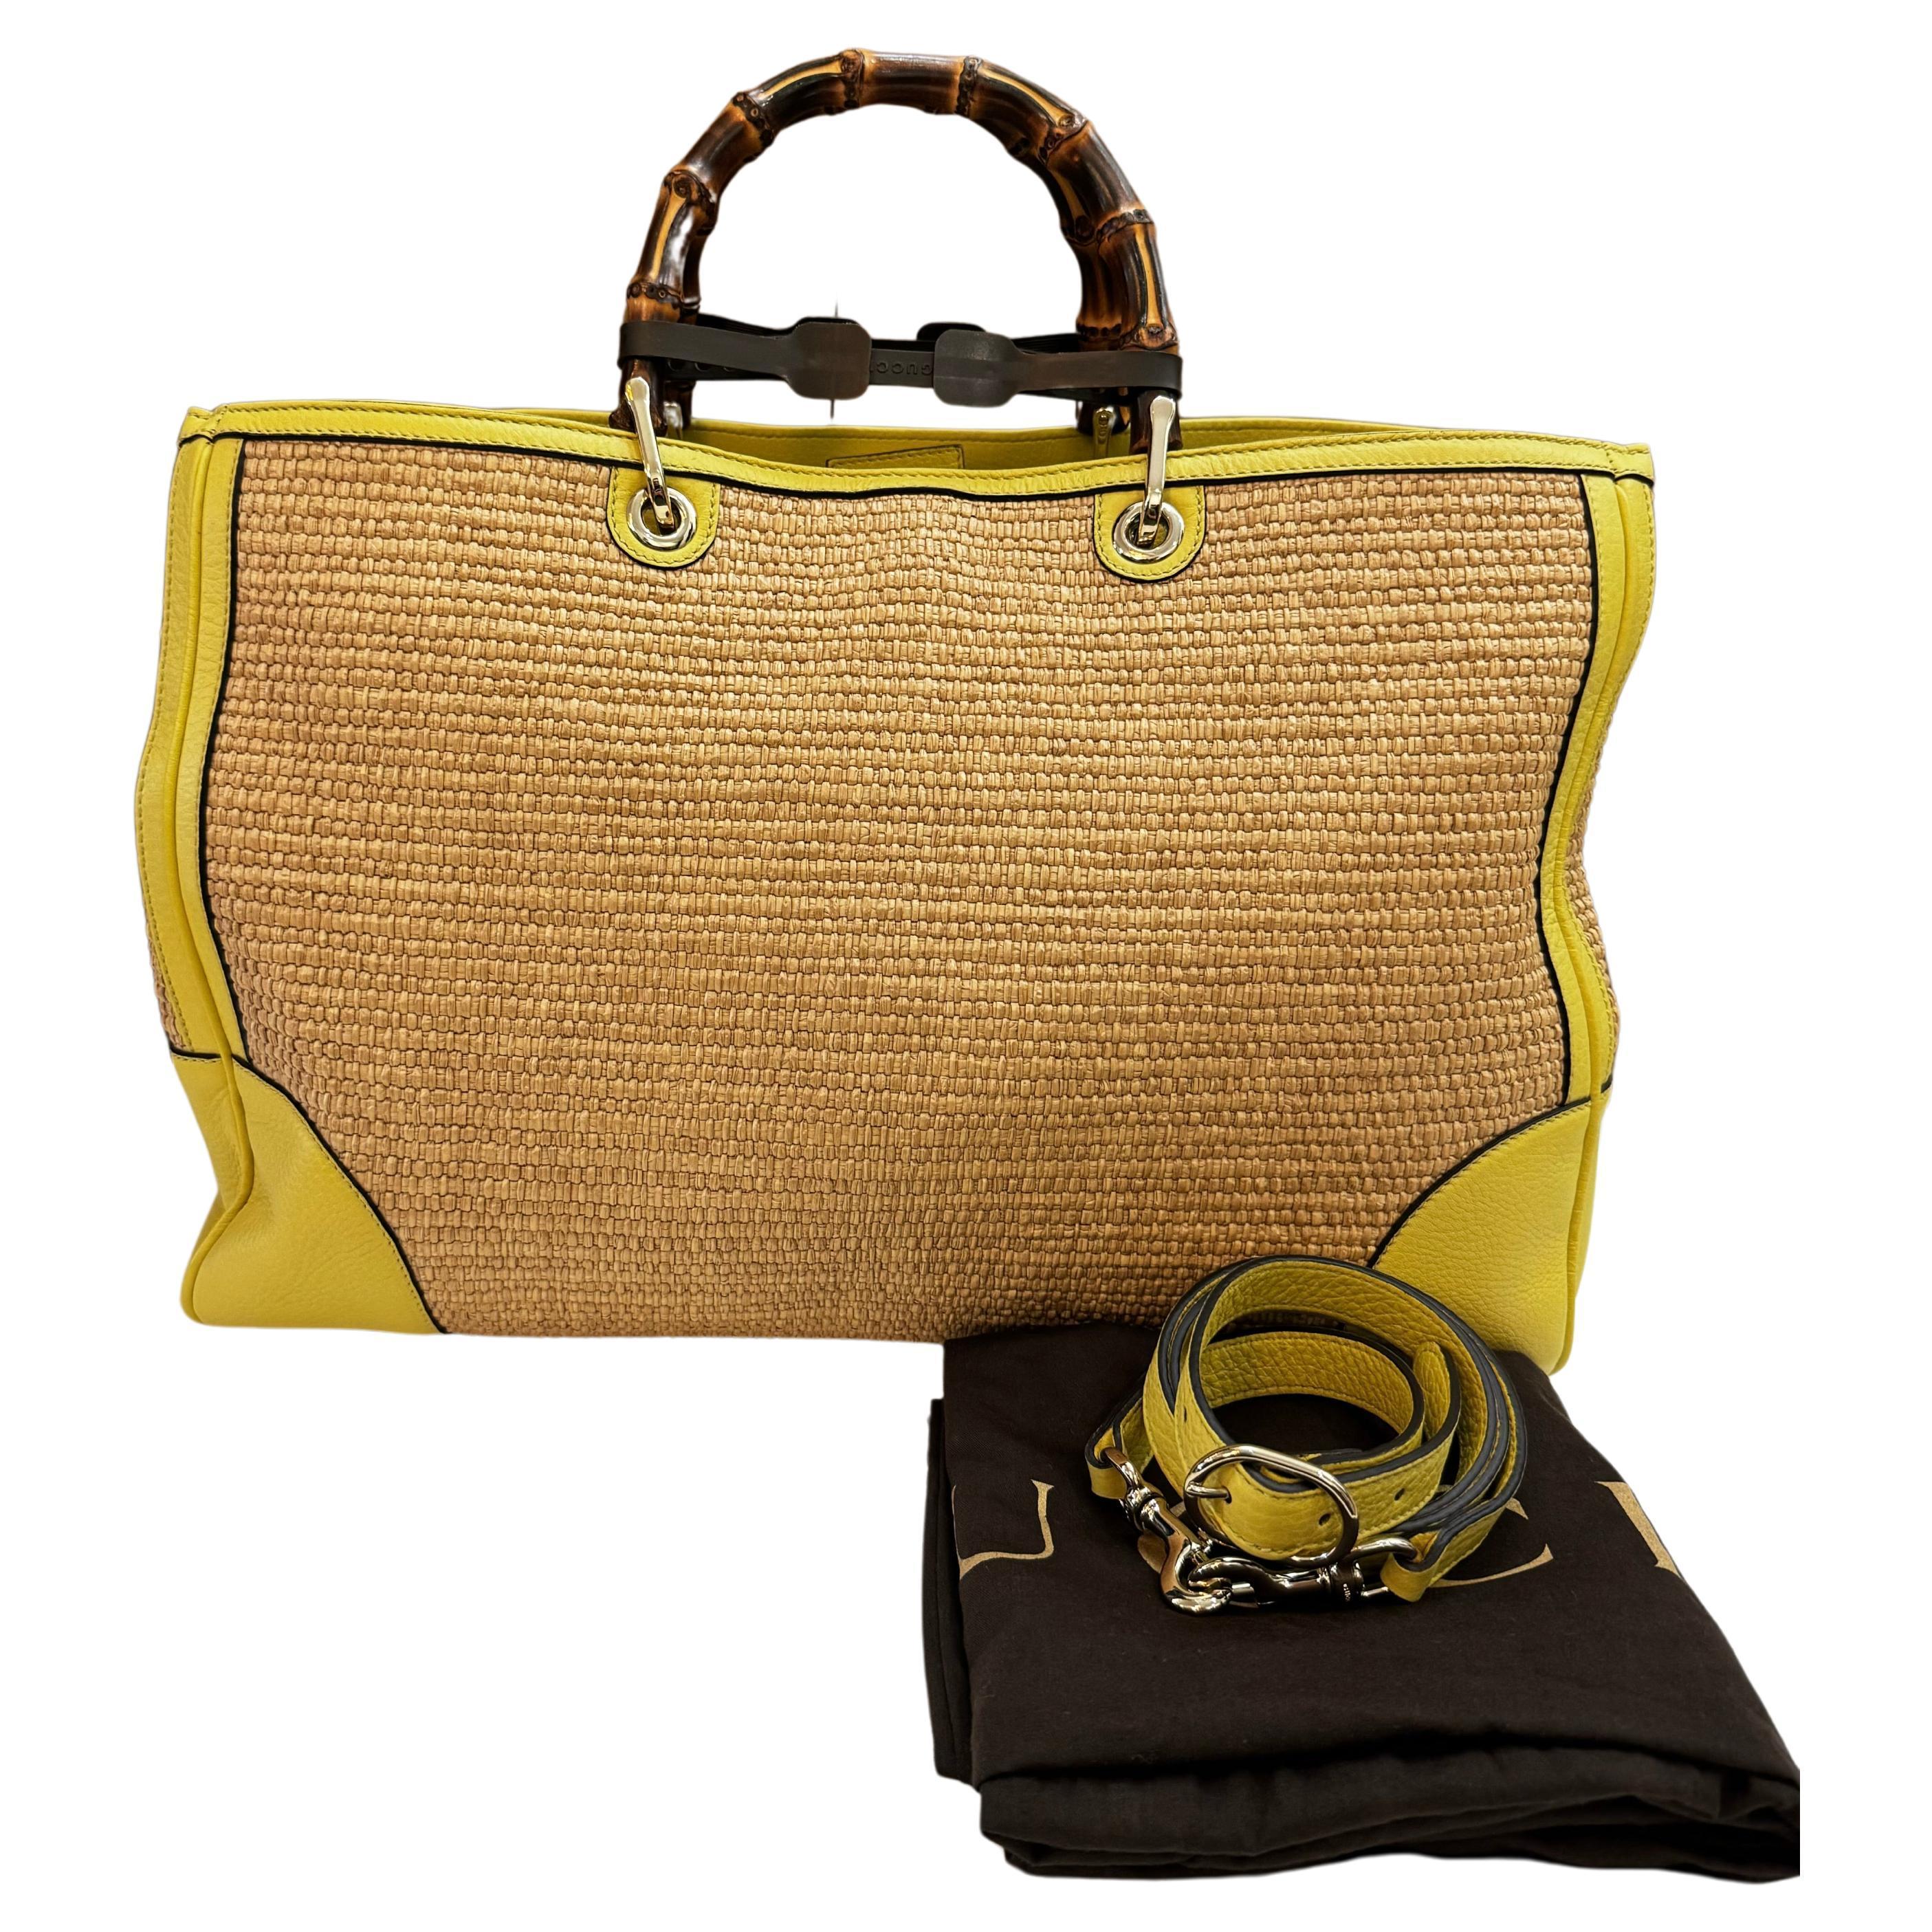 Ce grand sac fourre-tout en raphia et bambou de Gucci est réalisé en paille tressée dans sa couleur naturelle et en cuir de veau jaune, avec des ferrures dorées et des poignées robustes en bambou. De larges fermetures magnétiques sur le dessus